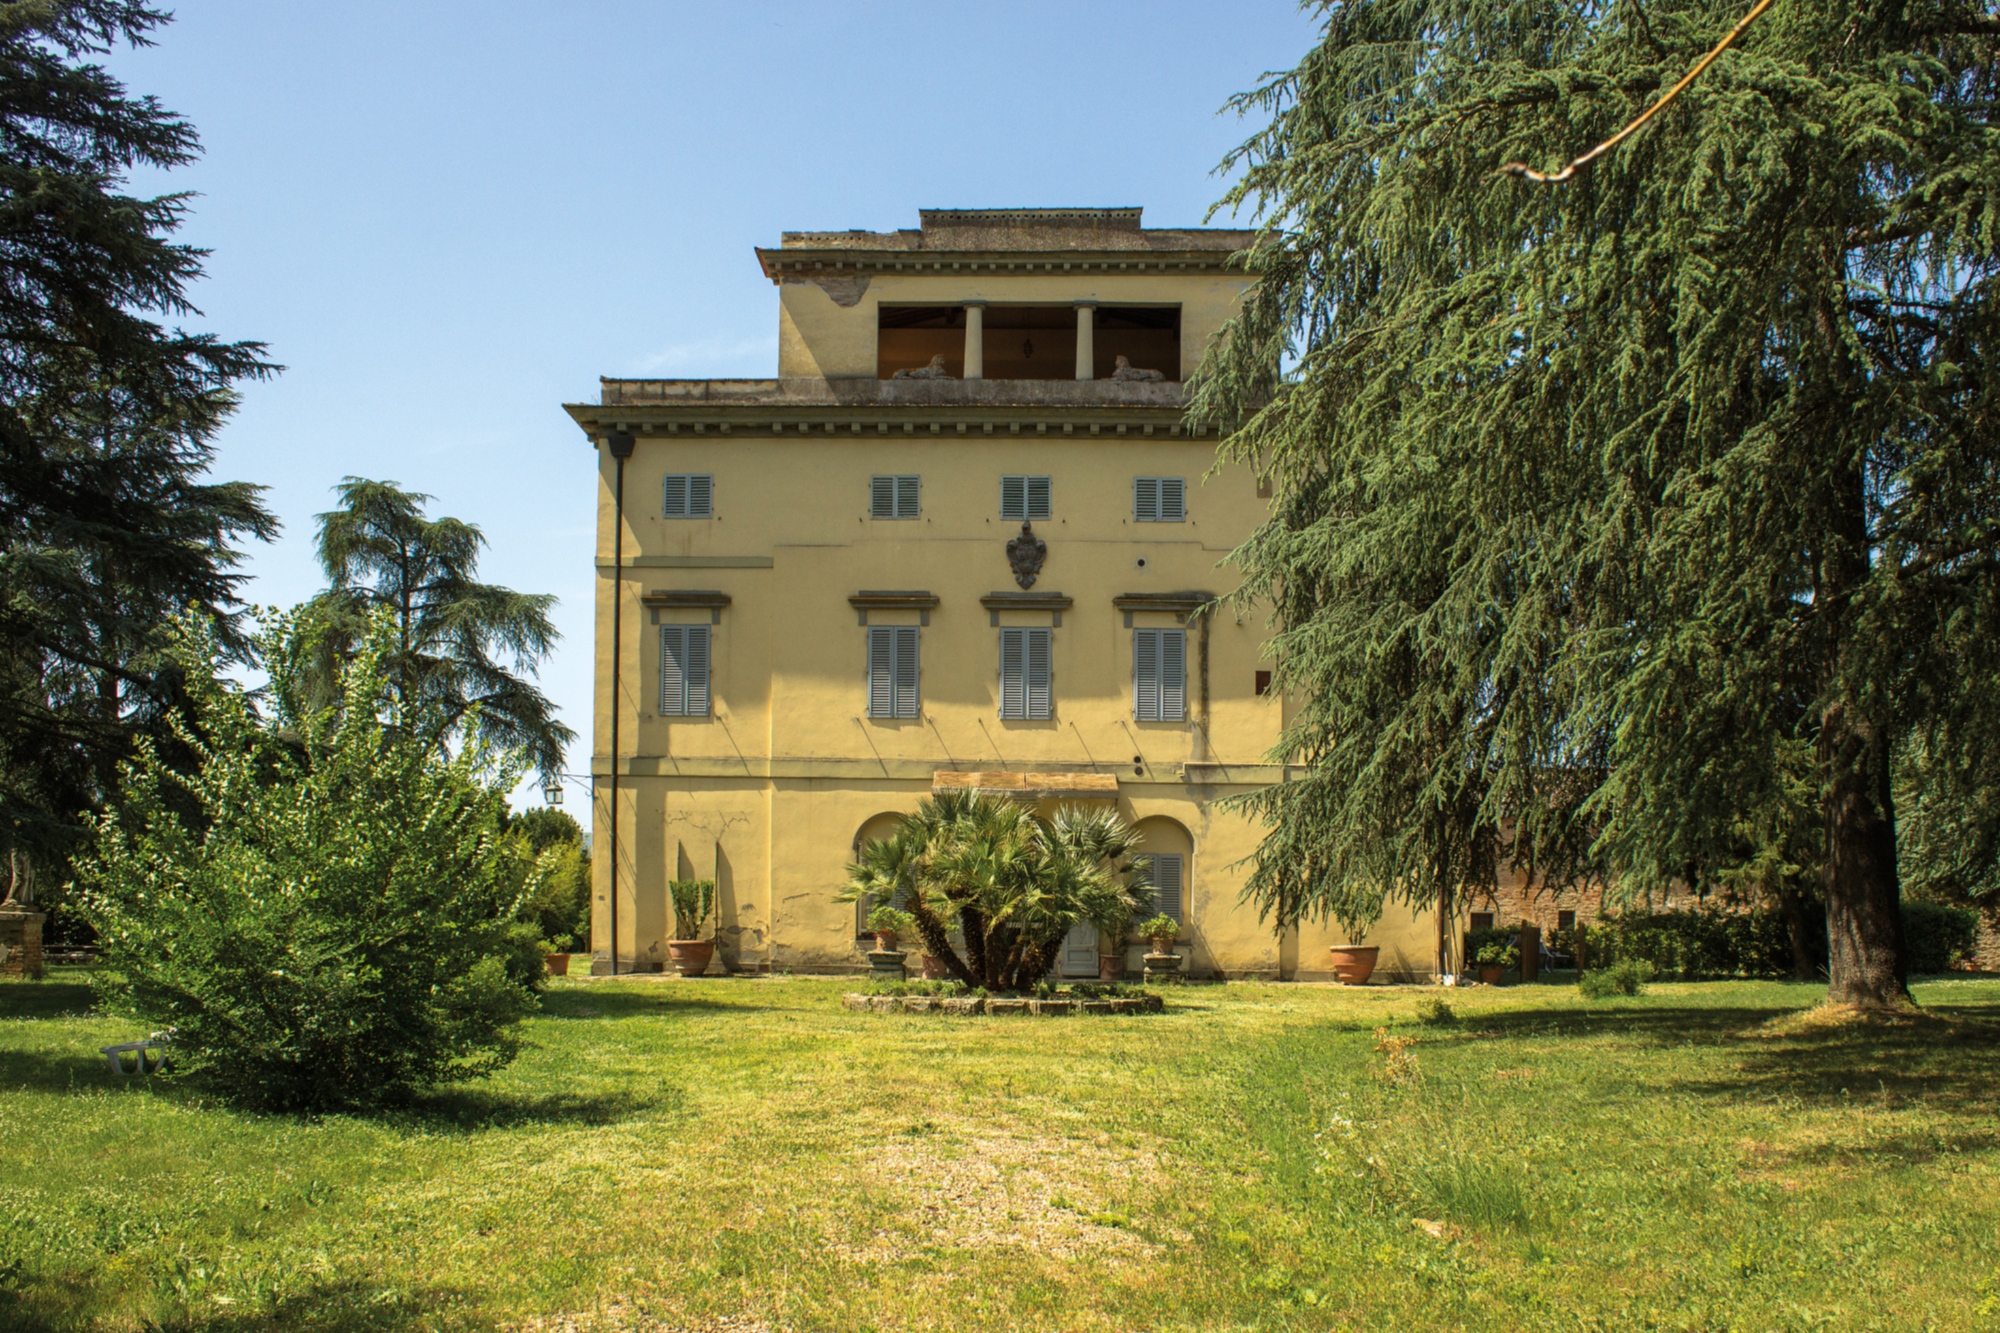 Migliarina country villa